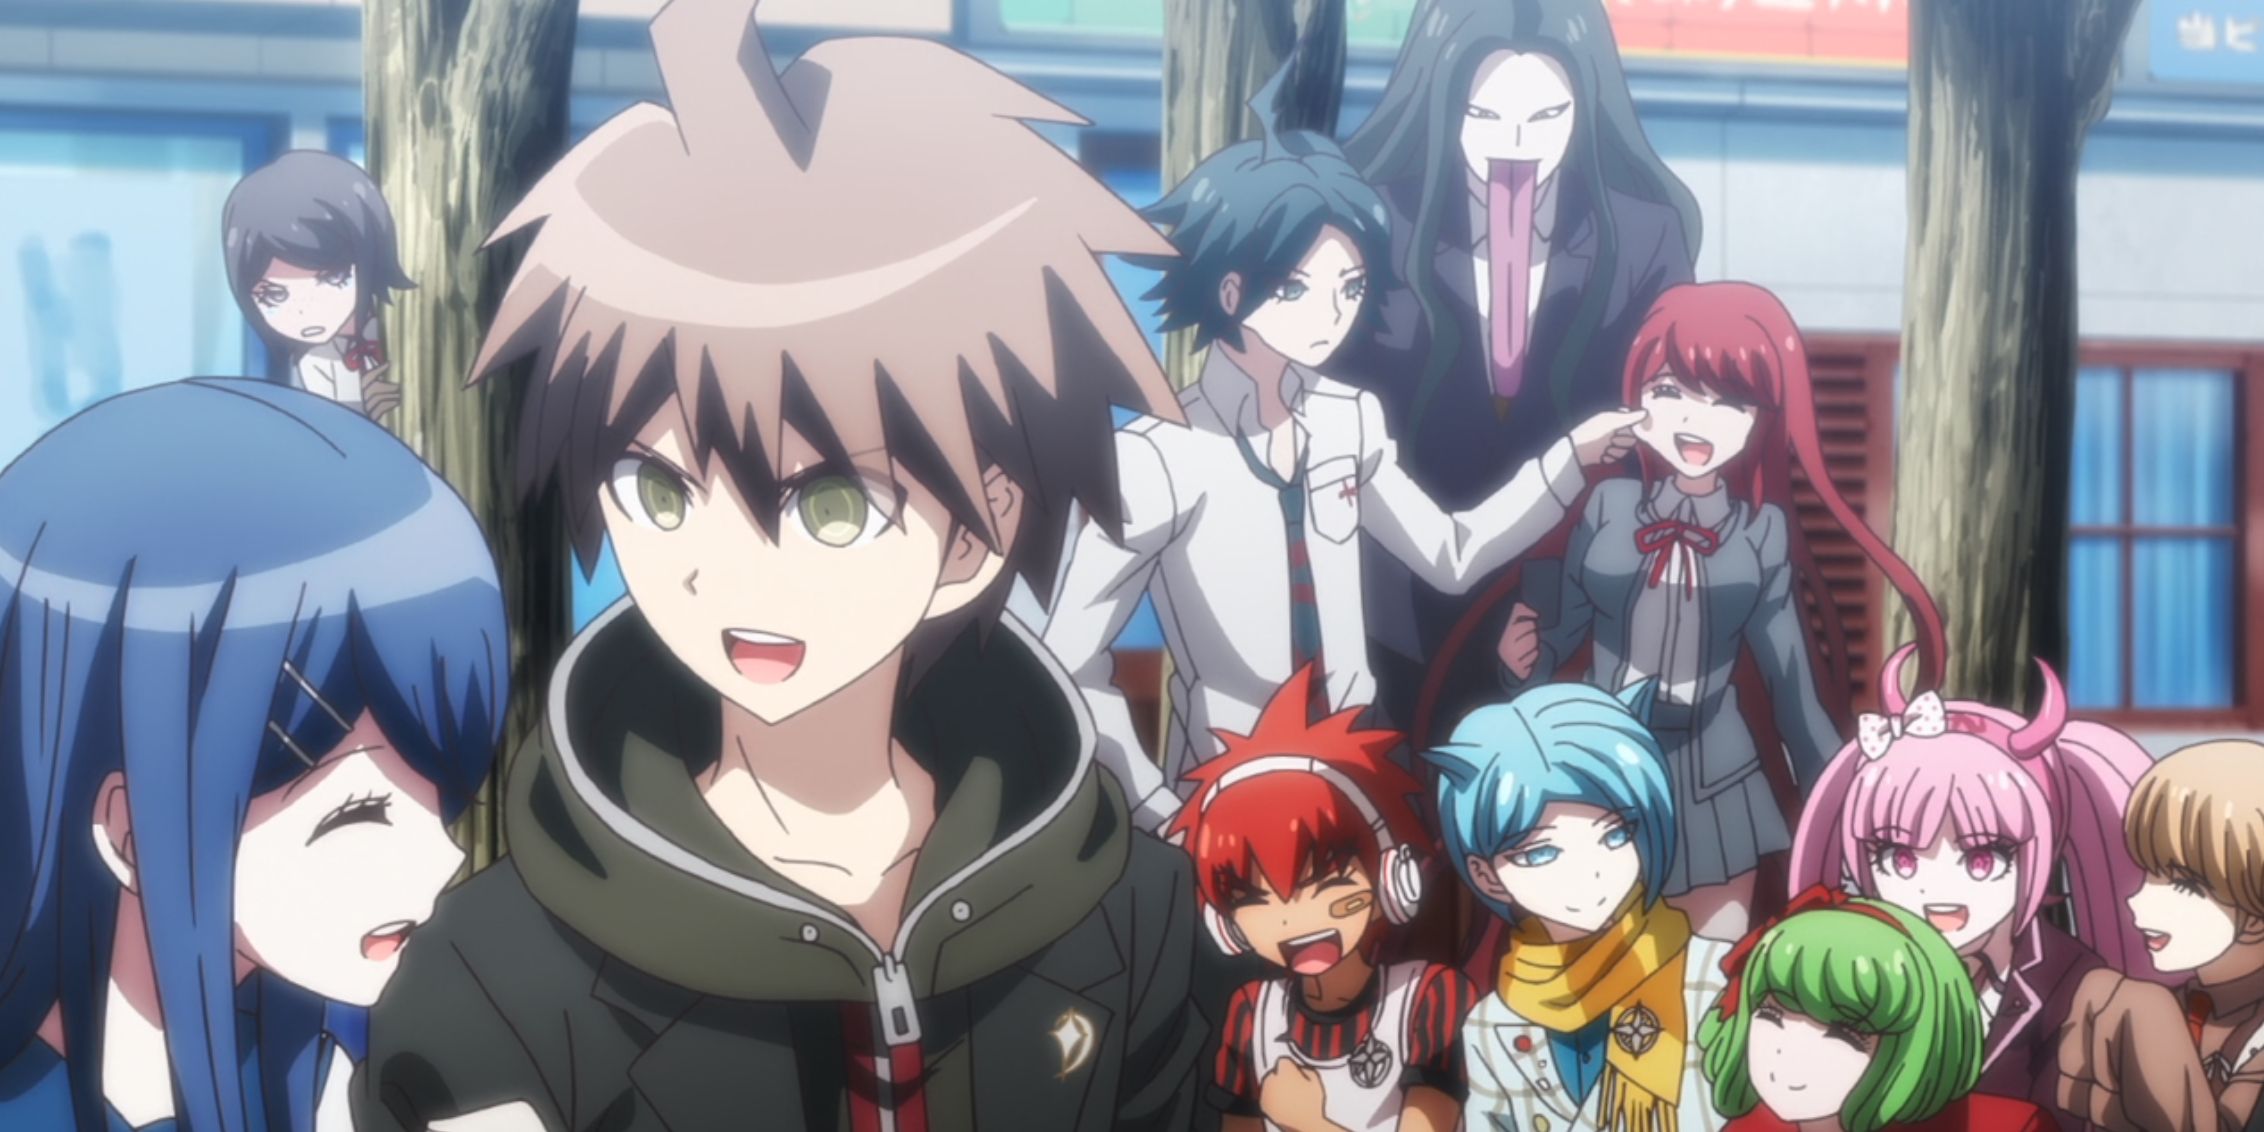 Anime OVA Super Danganronpa 2.5 Full Cast